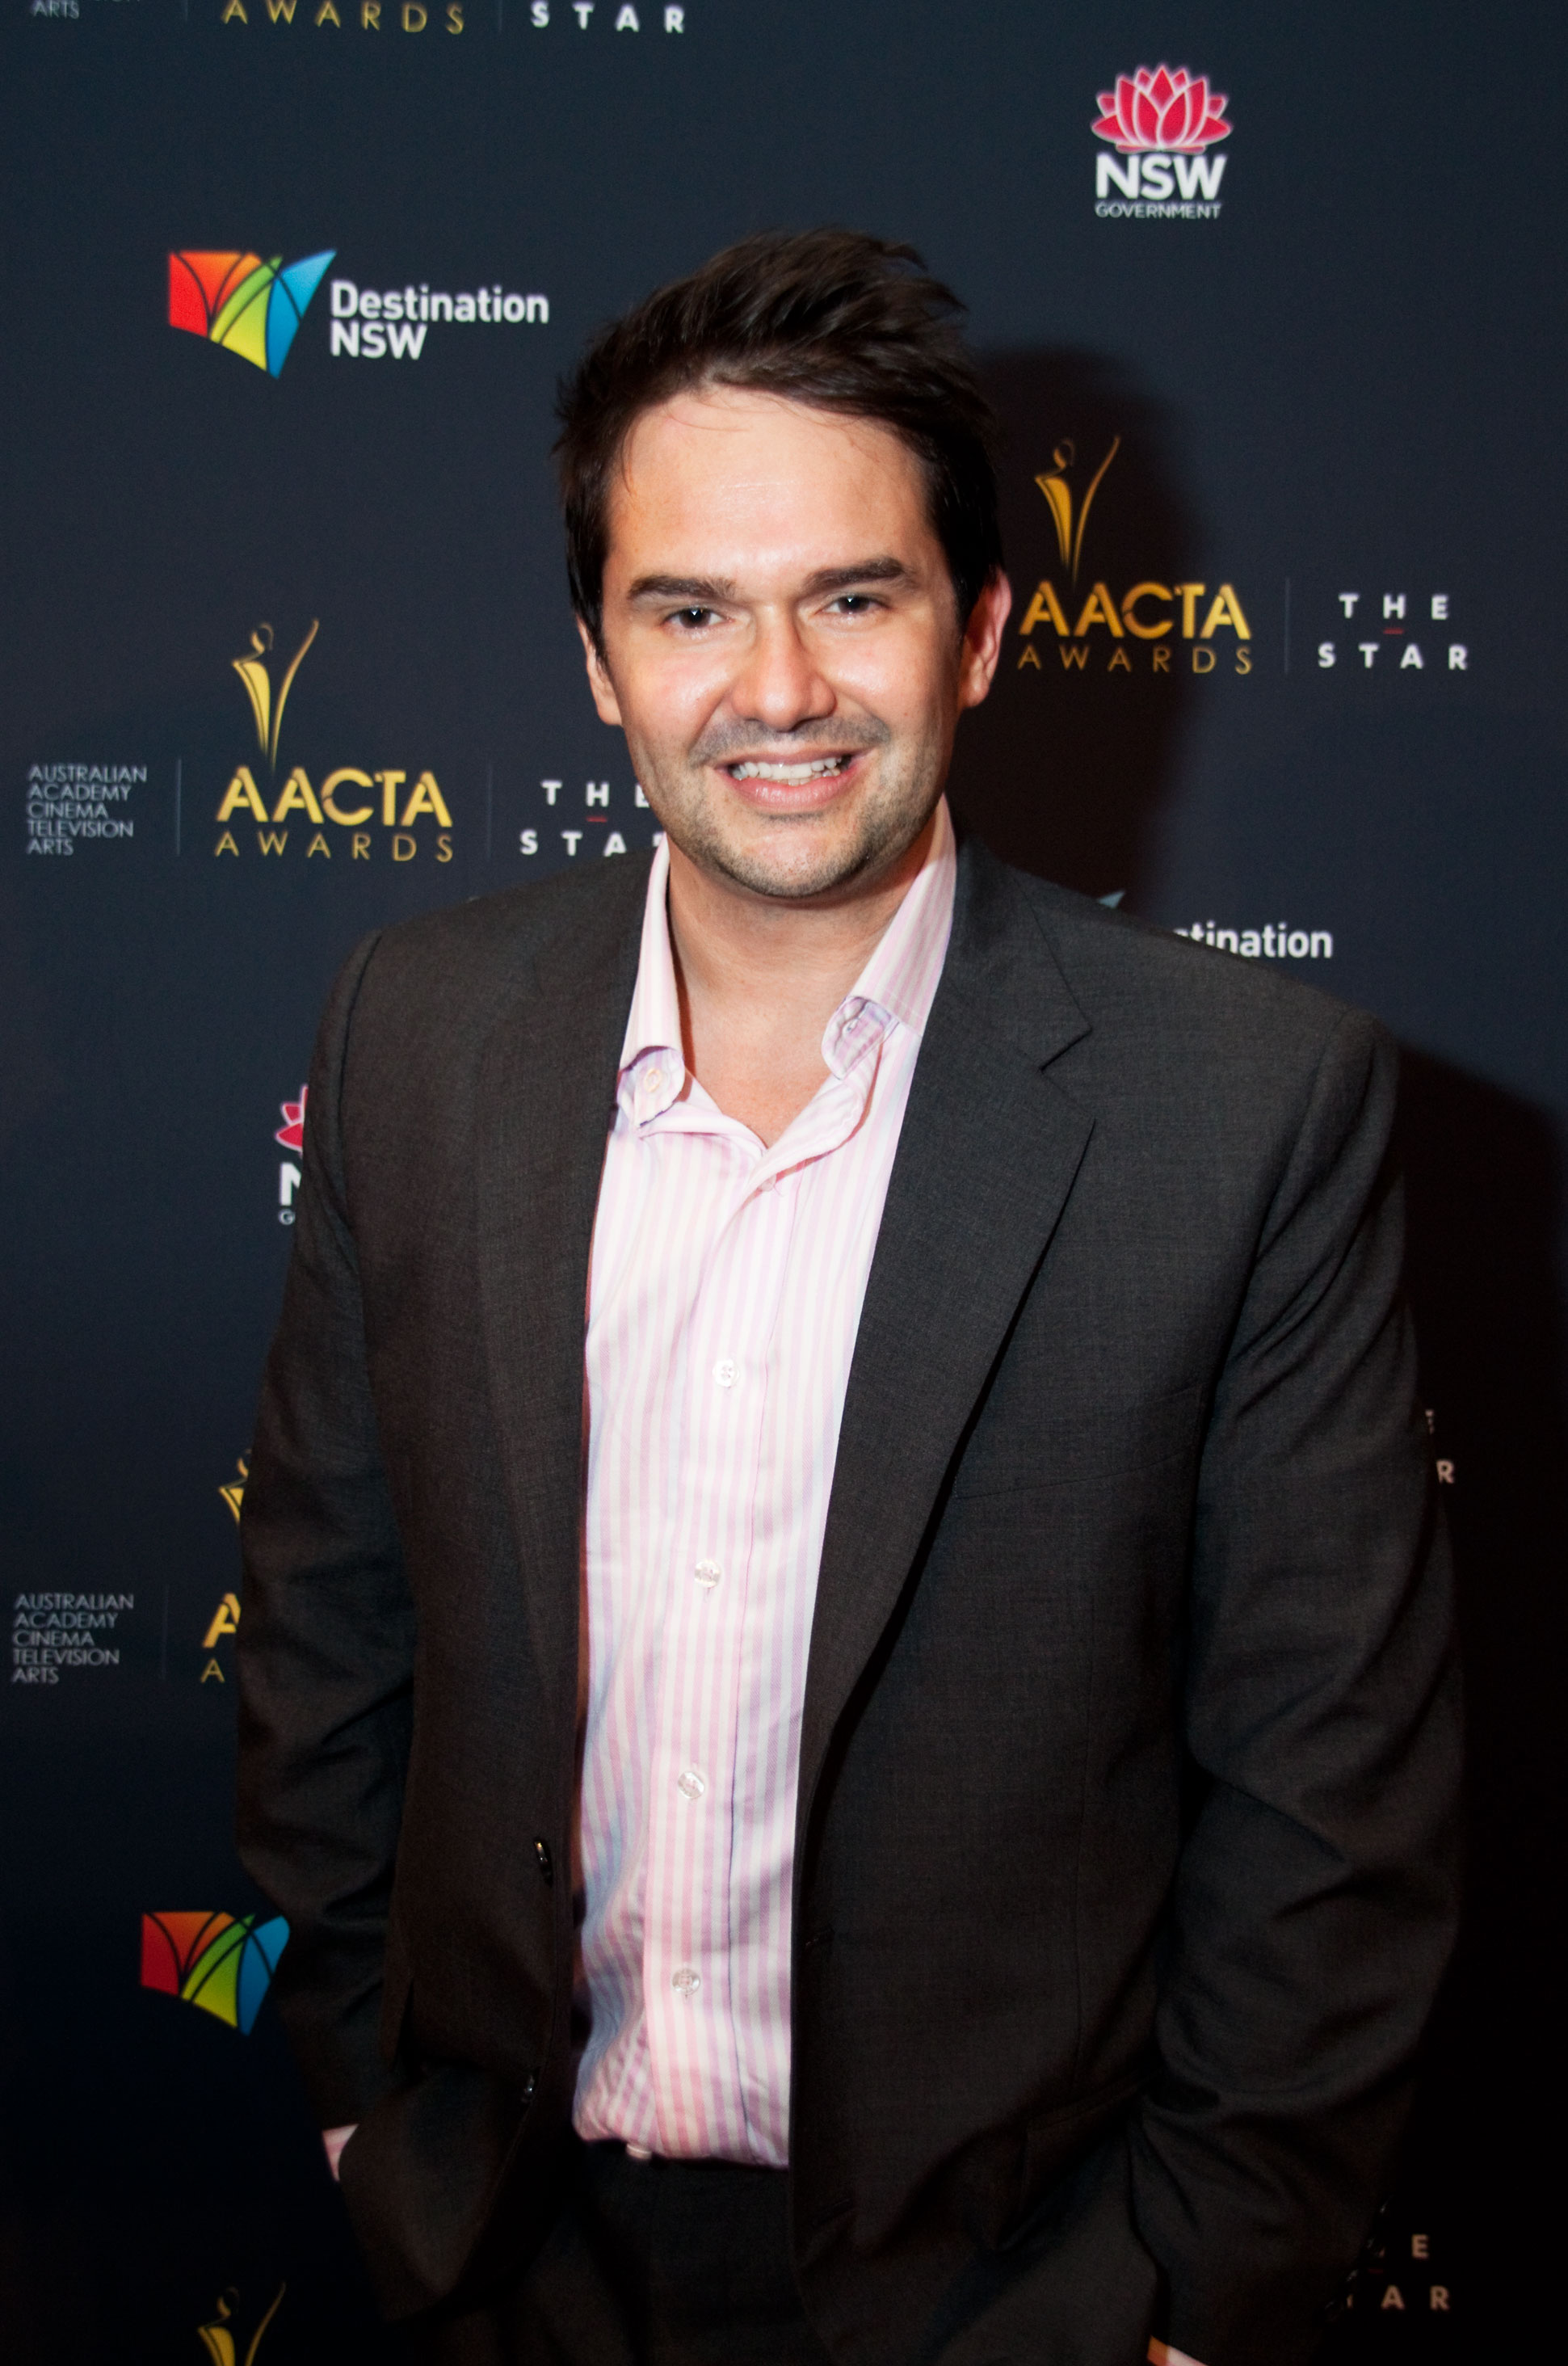 AACTA Awards 2012